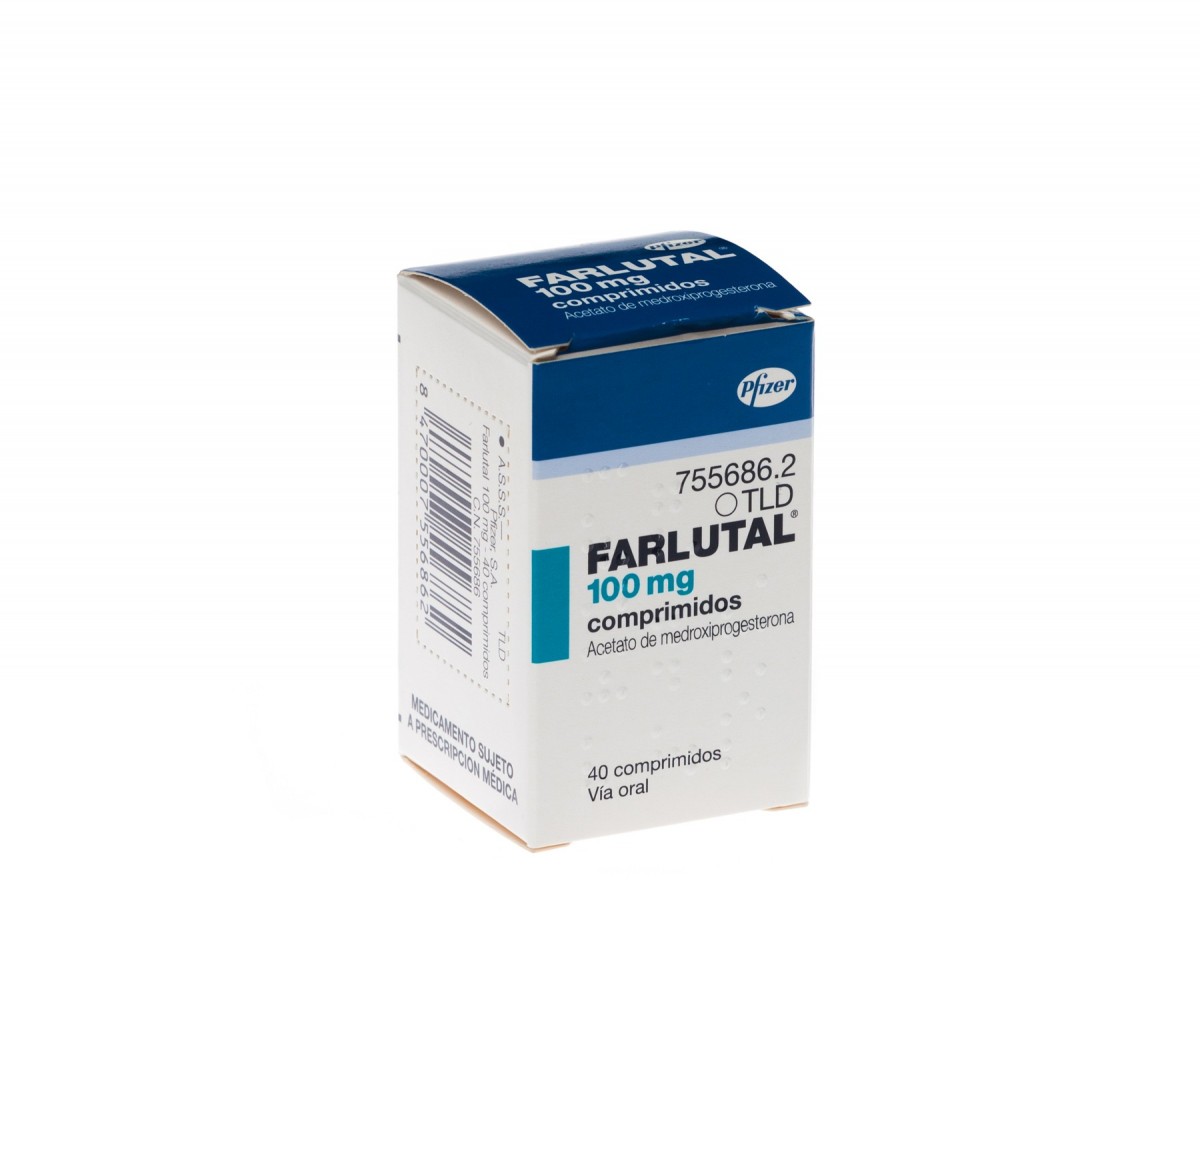 FARLUTAL 100 mg COMPRIMIDOS , 40 comprimidos fotografía del envase.